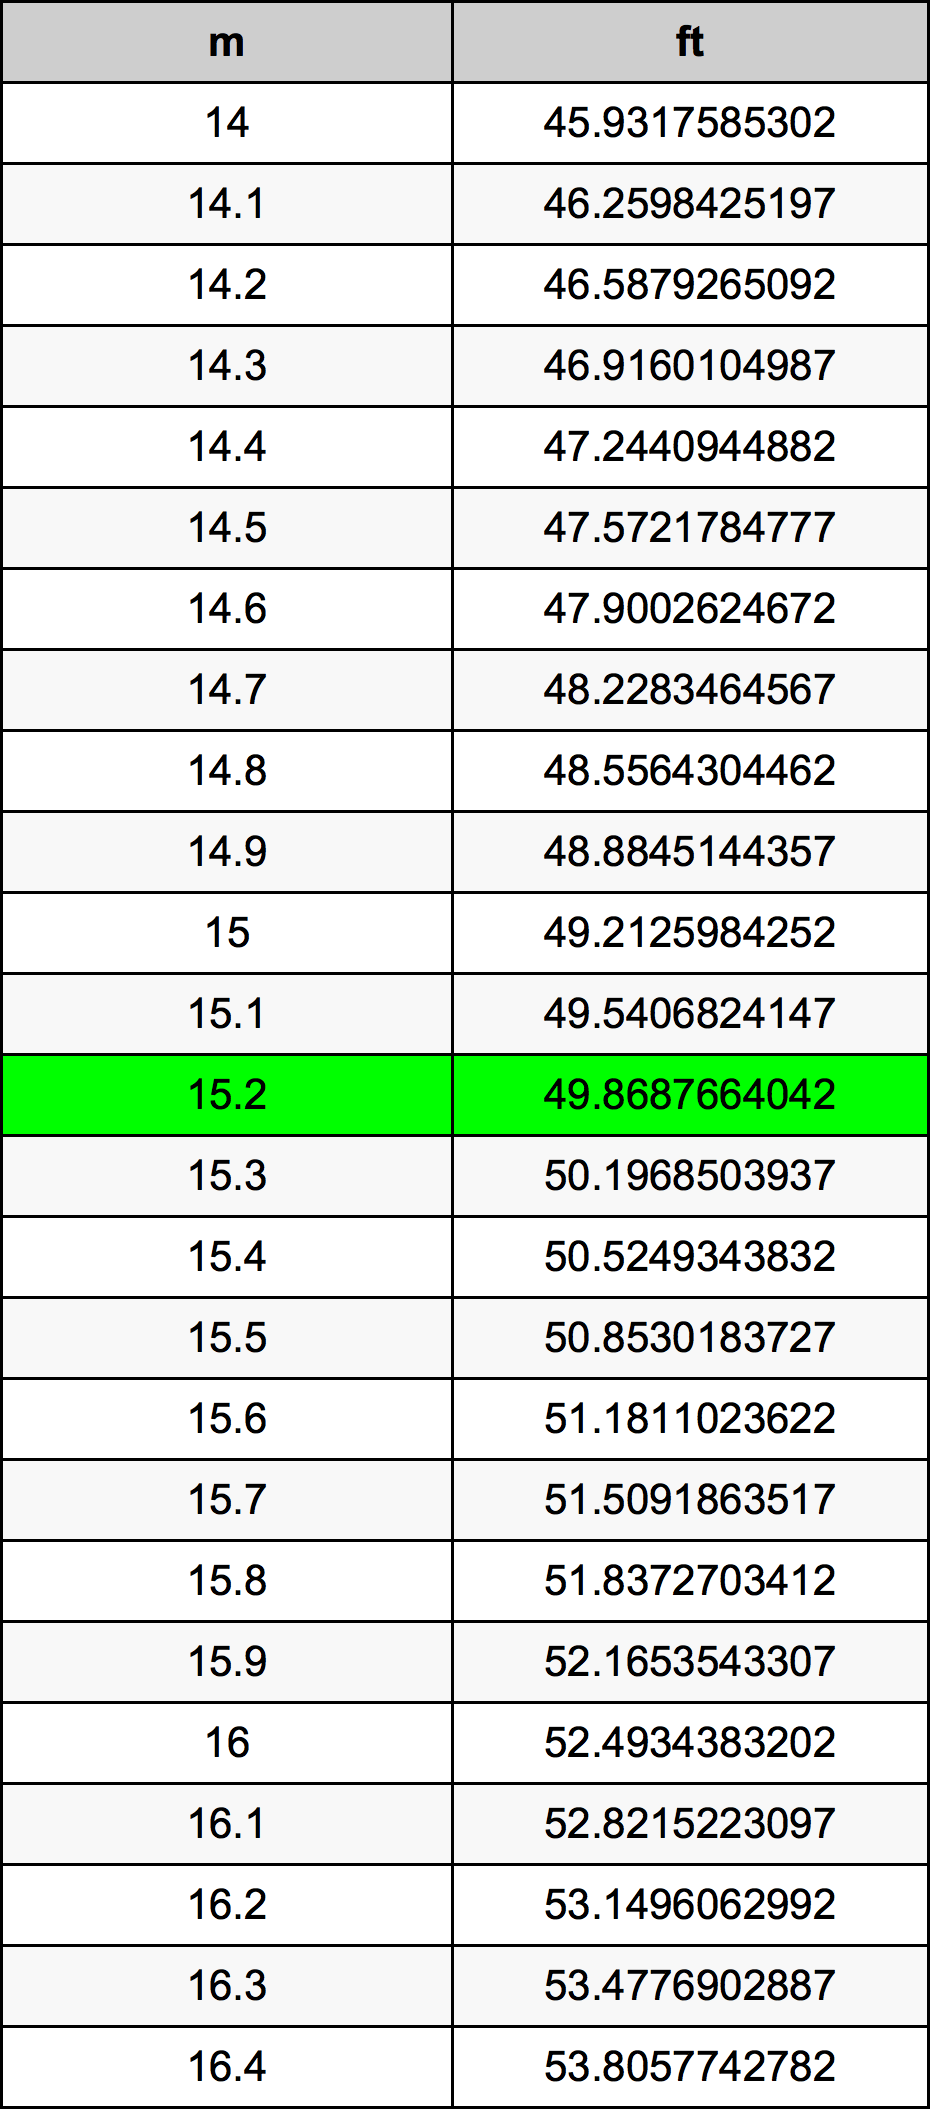 15.2 Metru tabelul de conversie